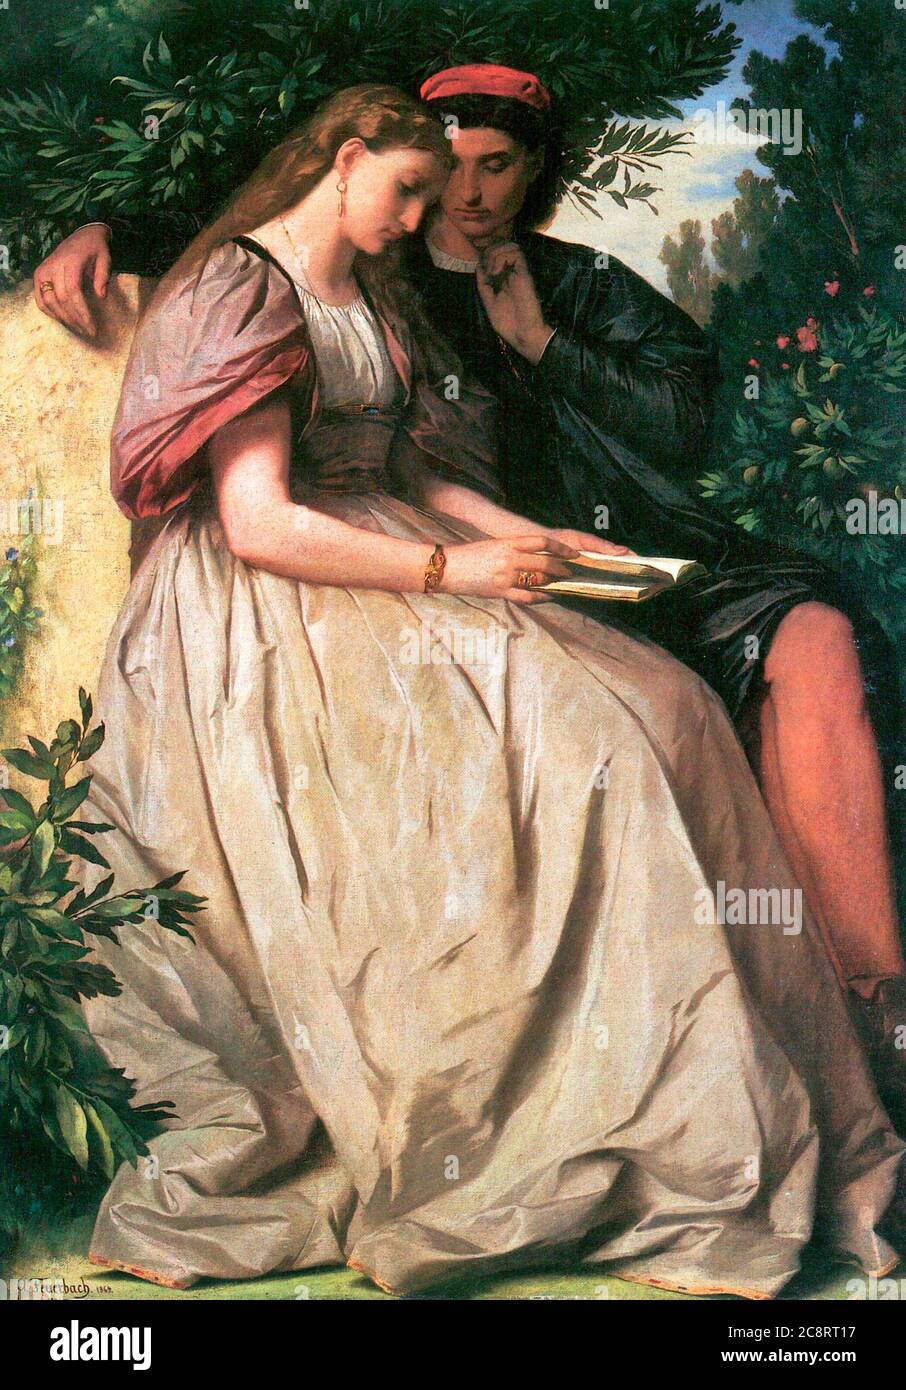 Paolo und Francesca - les jeunes amoureux découvrent leur amour mutuel en lisant le roman de Lancelot, dont ils ont pris conscience - Anselm Feuerbach, 1864 Banque D'Images